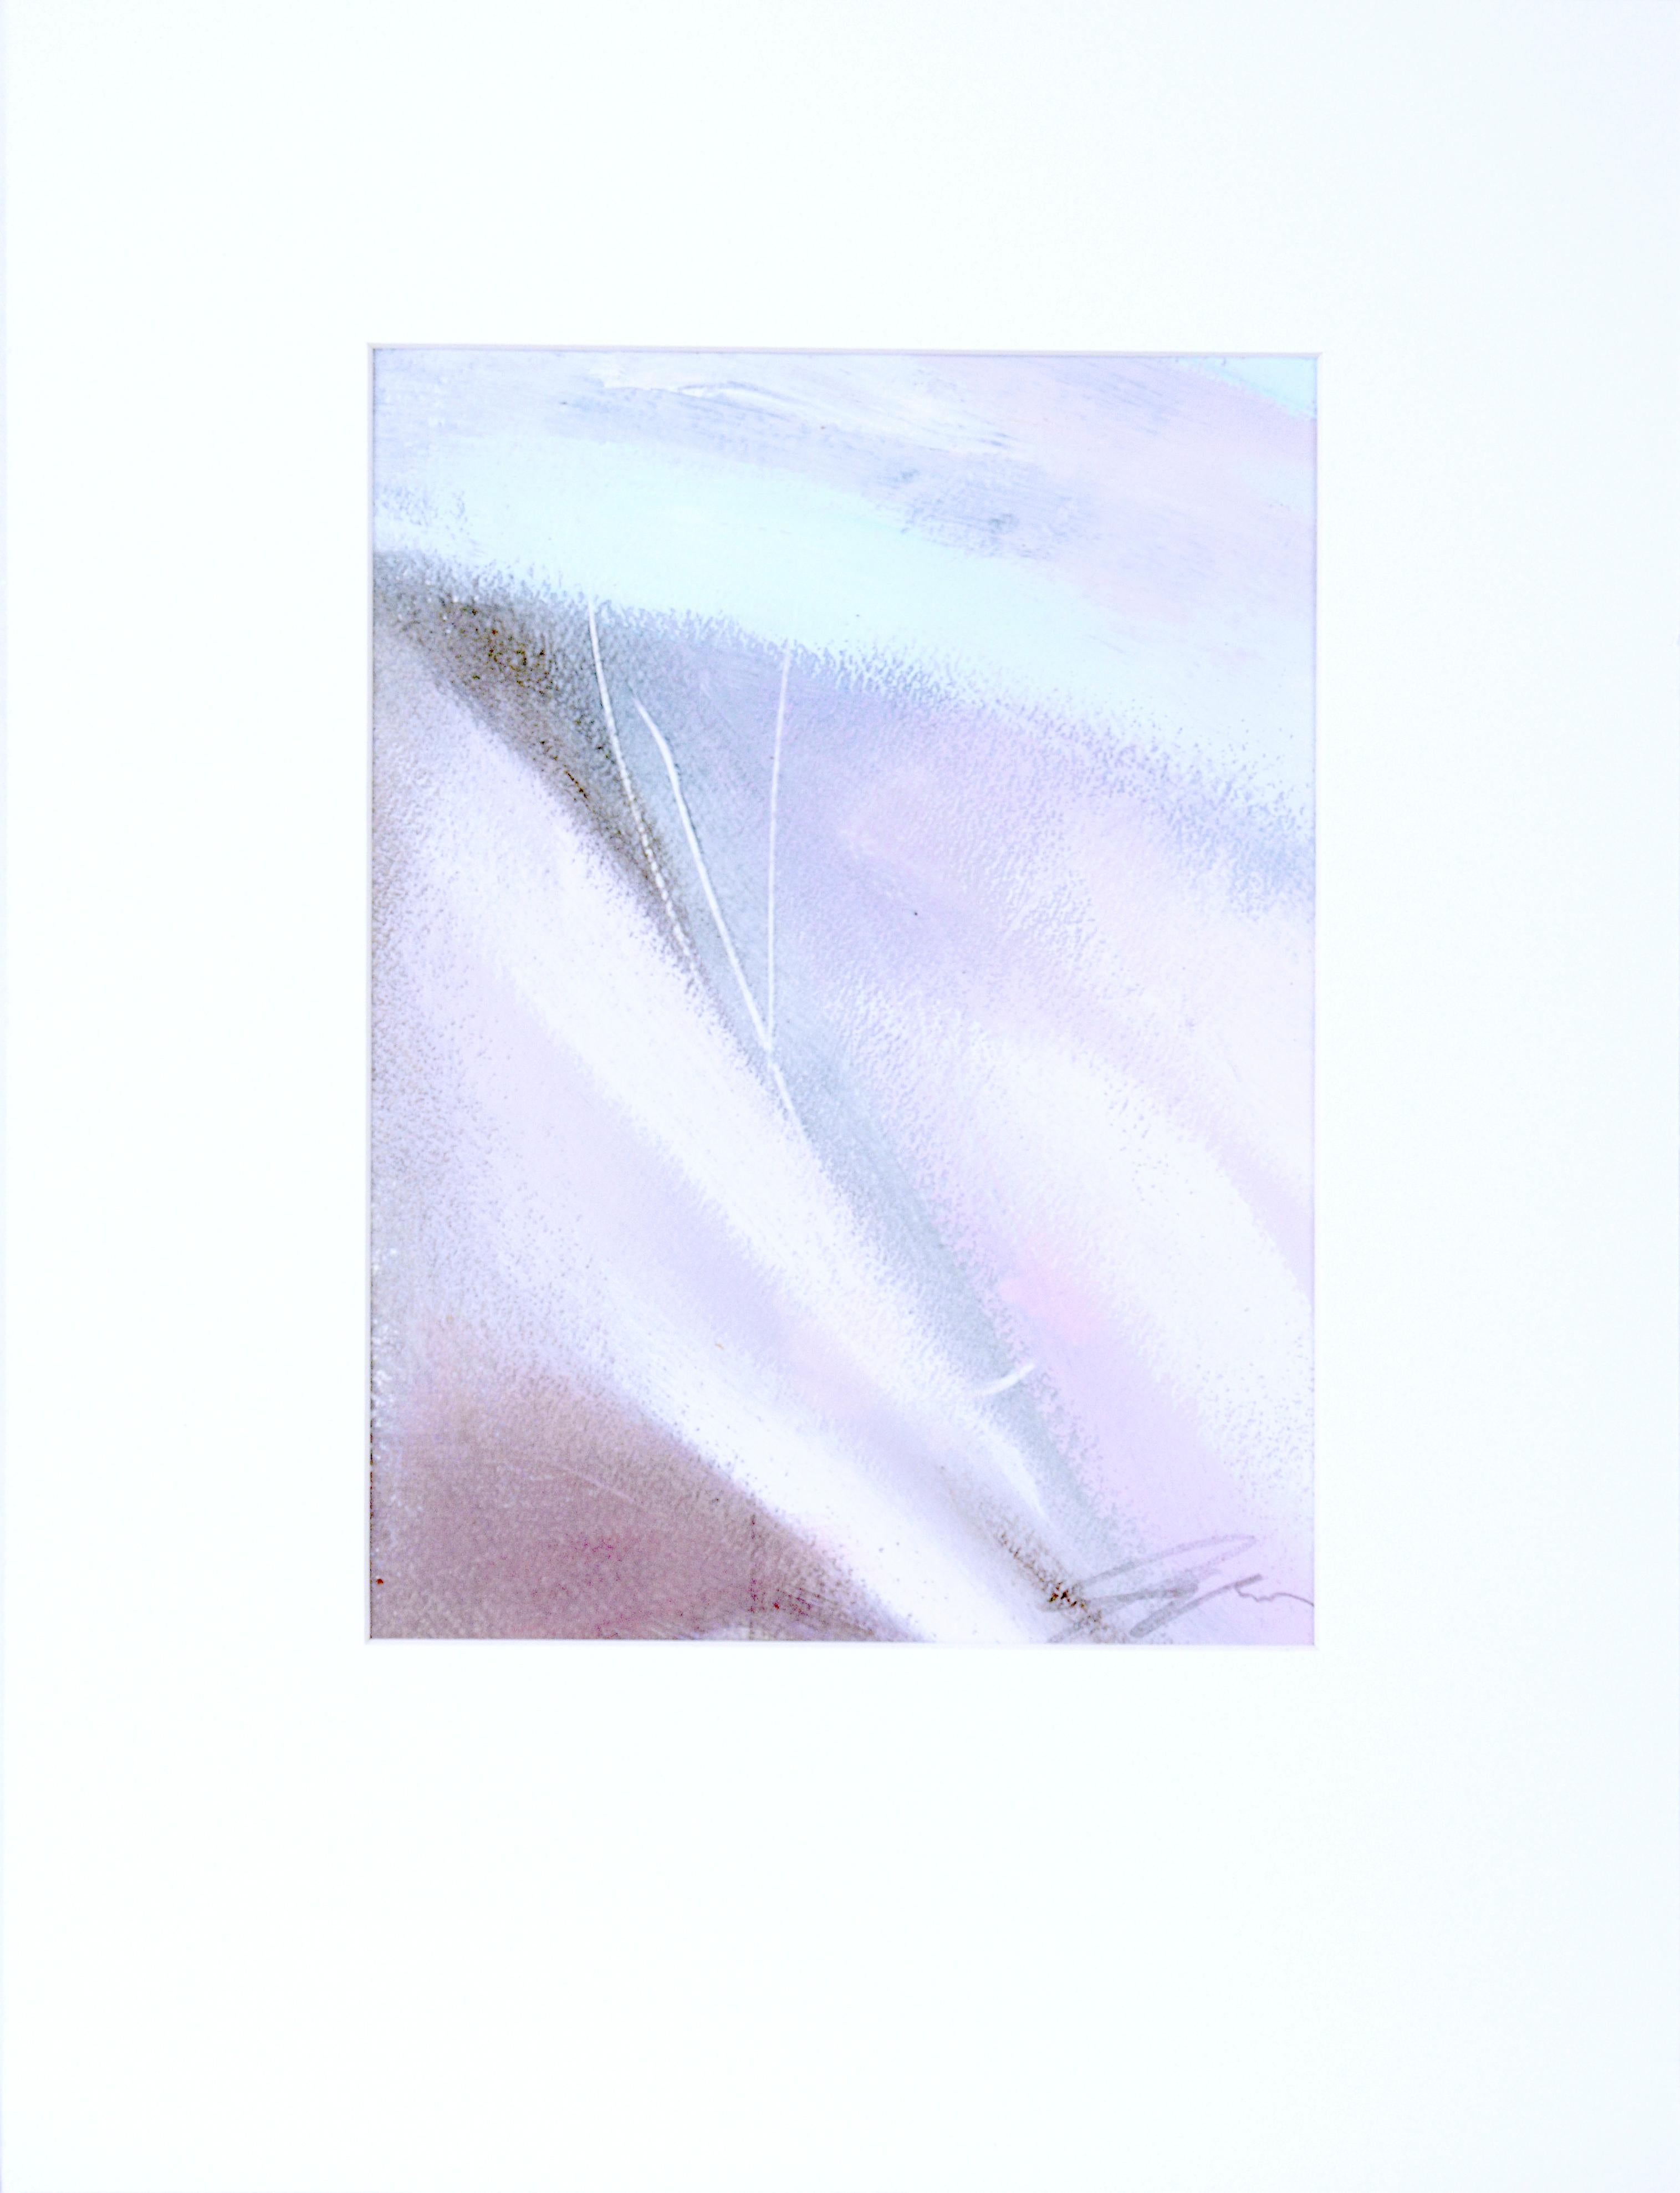 Abstract Painting Ronald Dennis Reams - Toujours partie et toujours entière II - Acrylique abstraite sur papier